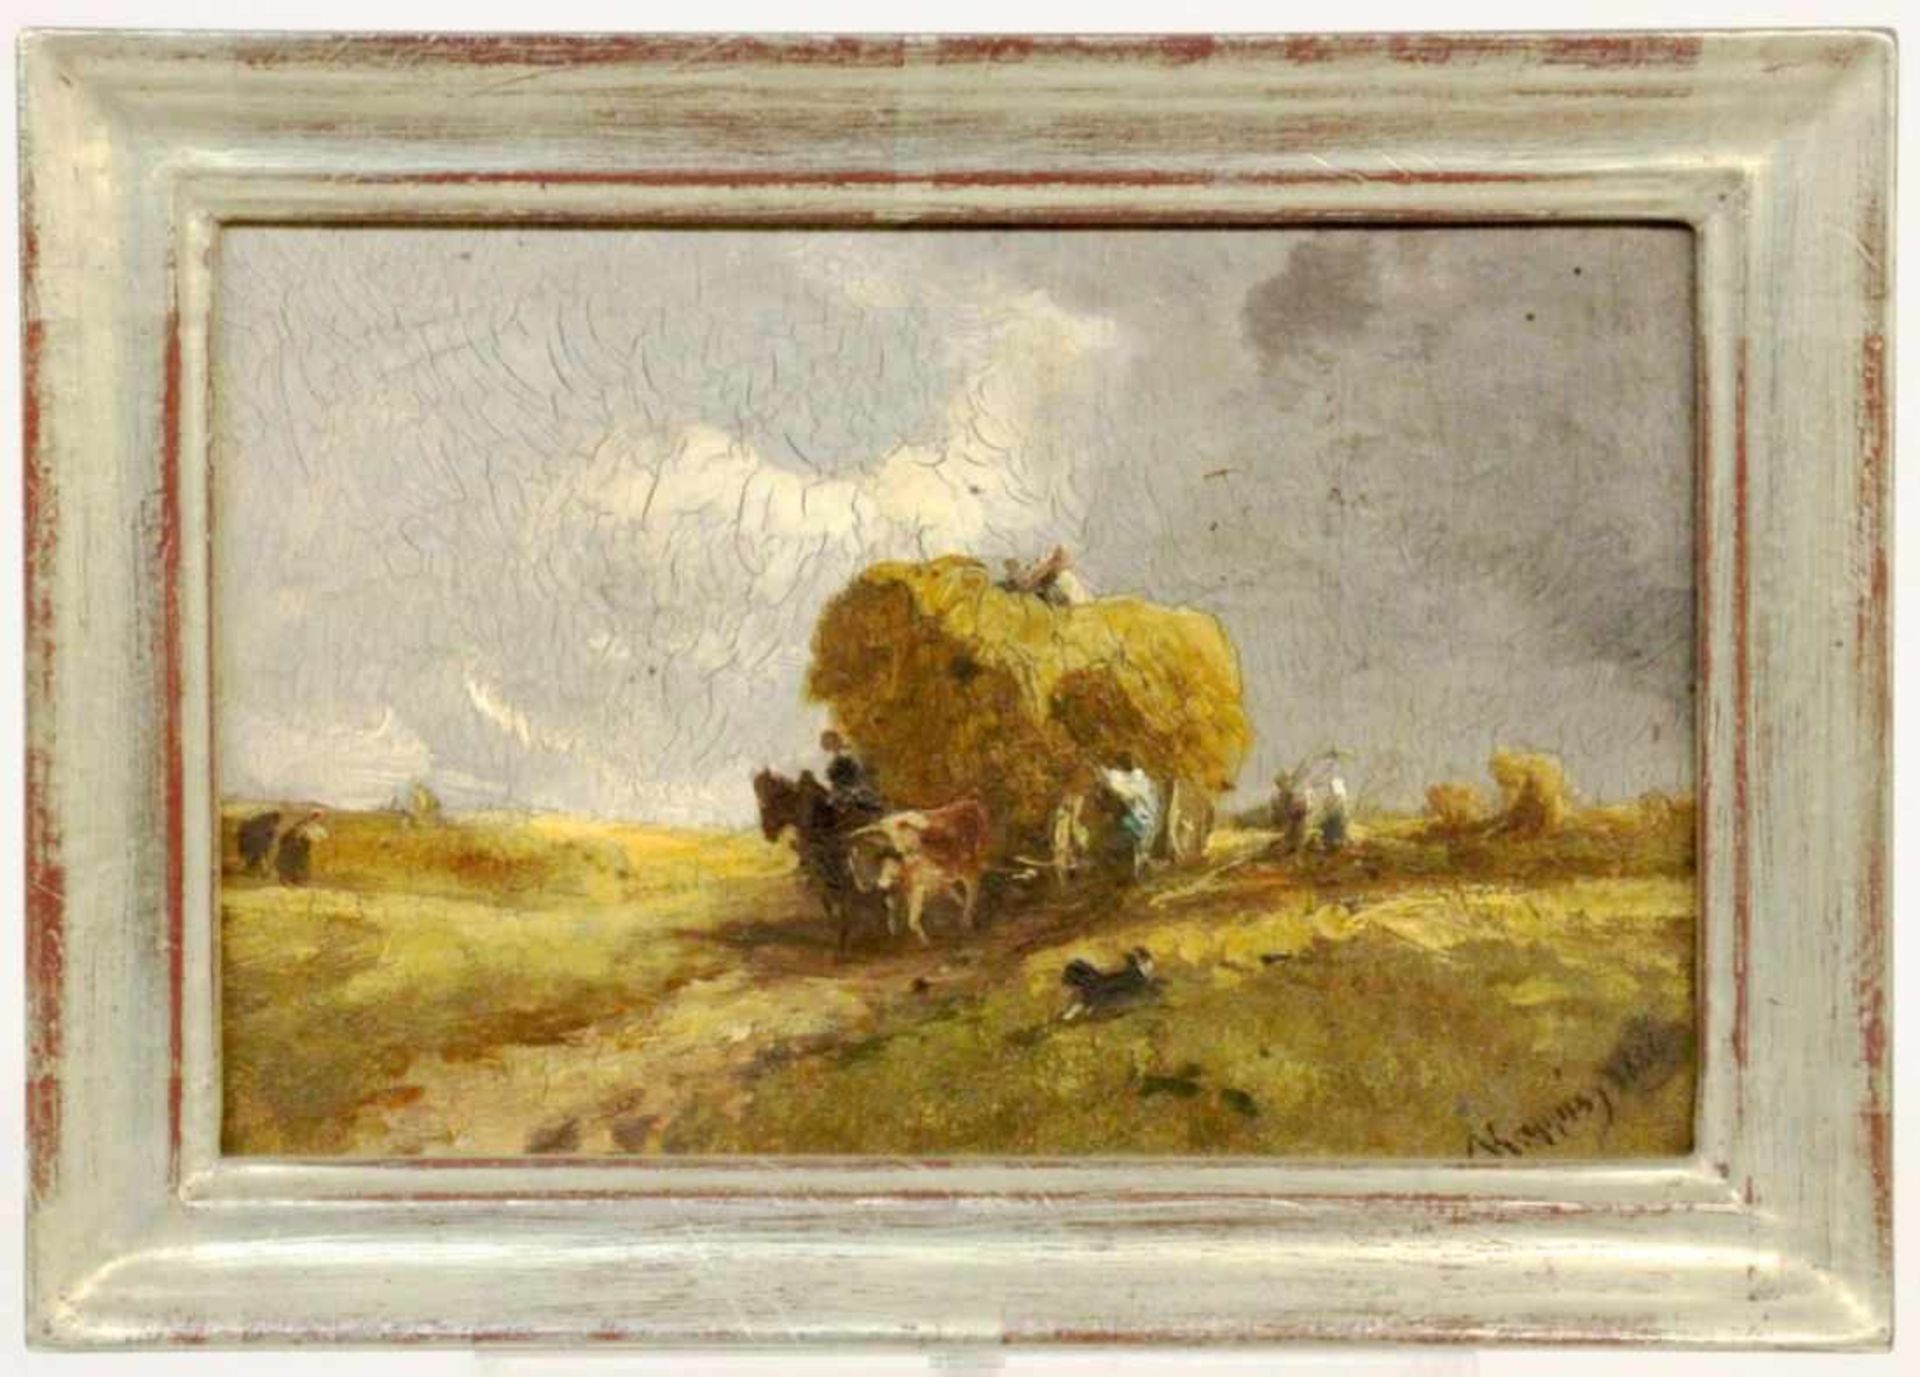 KAPPIS, ALBERT Wildberg 1836 - 1914 Stuttgart Farmers at Hay Making. Oil on panel, signed.